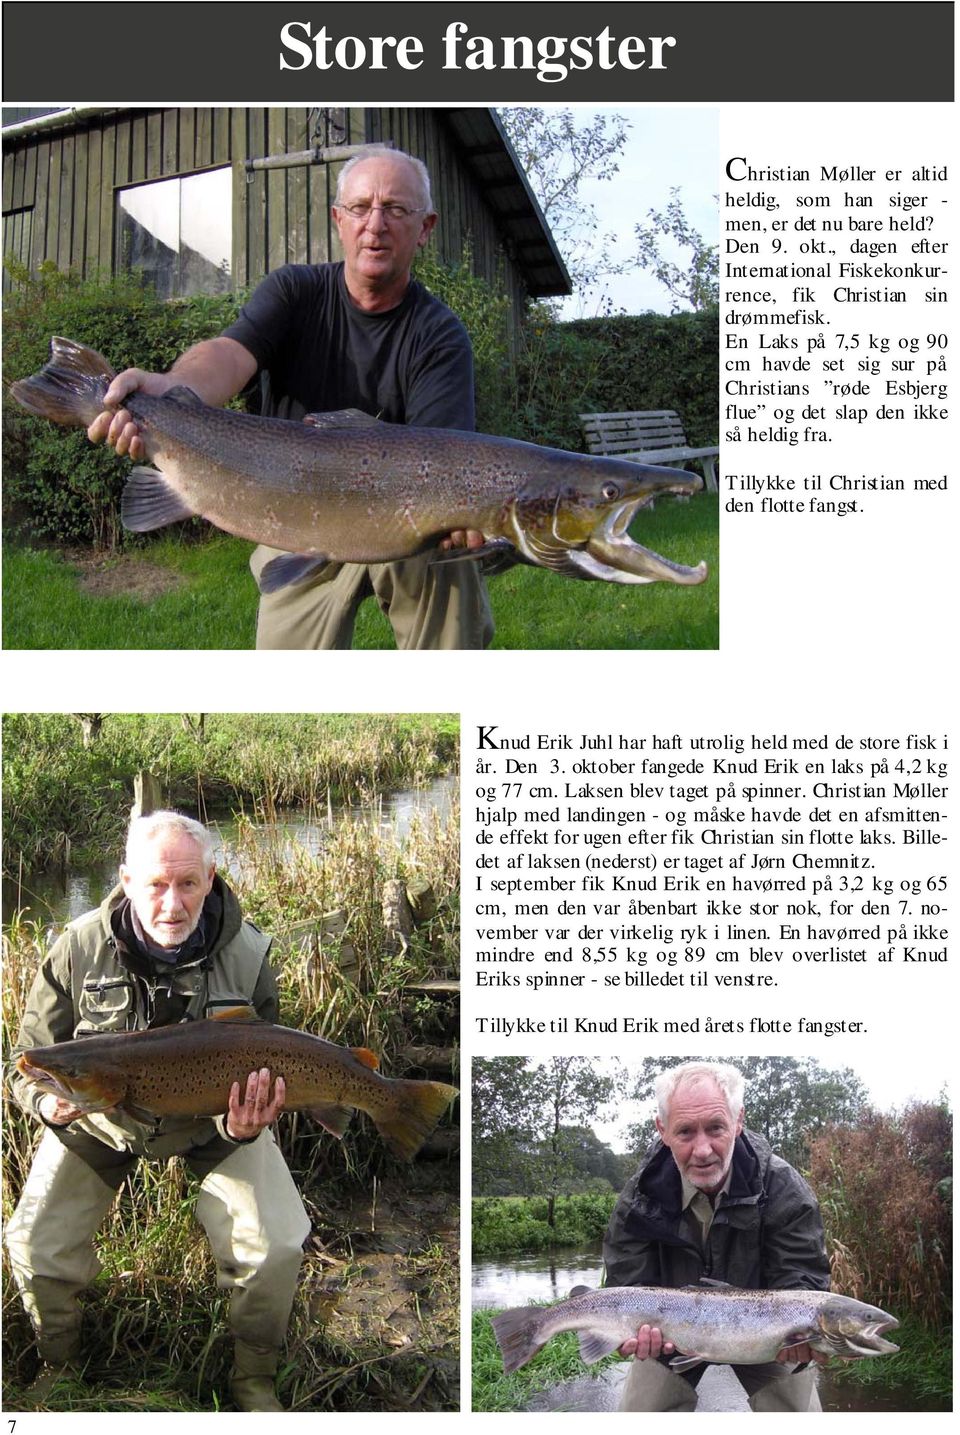 Knud Erik Juhl har haft utrolig held med de store fisk i år. Den 3. oktober fangede Knud Erik en laks på 4,2 kg og 77 cm. Laksen blev taget på spinner.